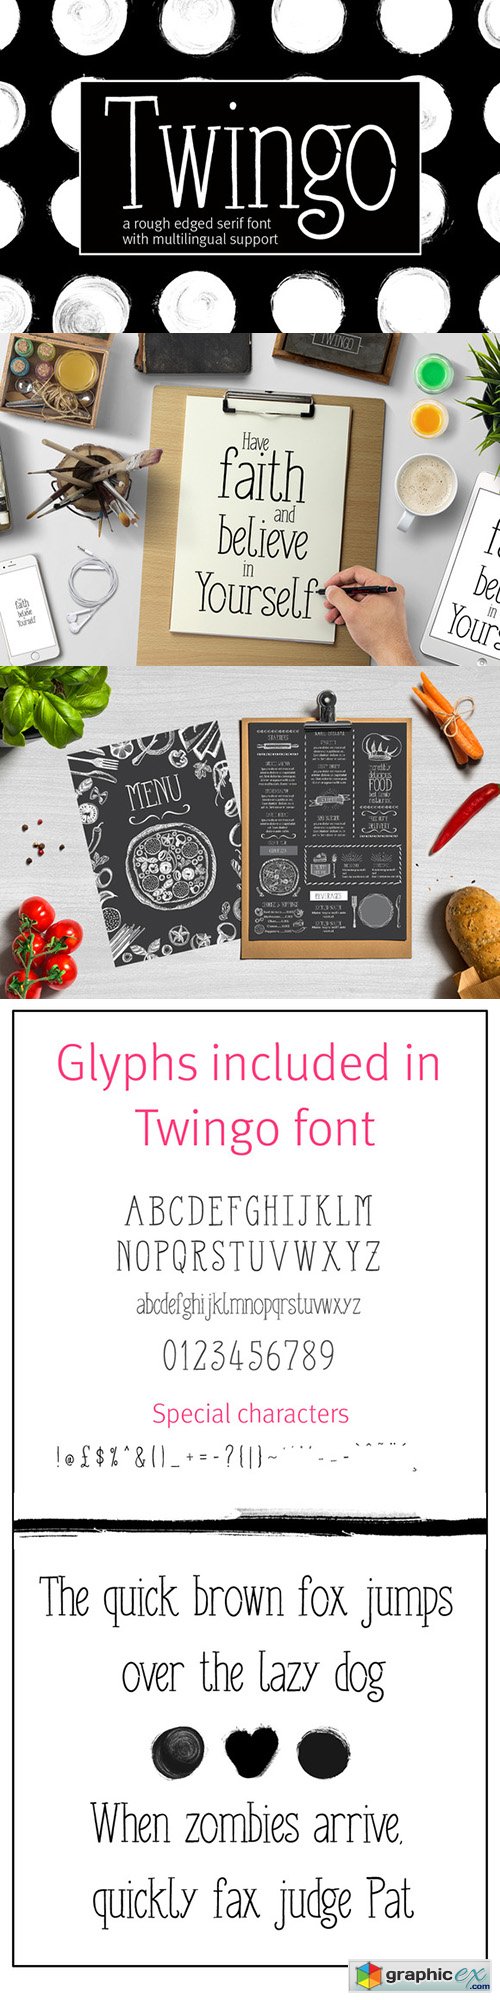 Twingo font